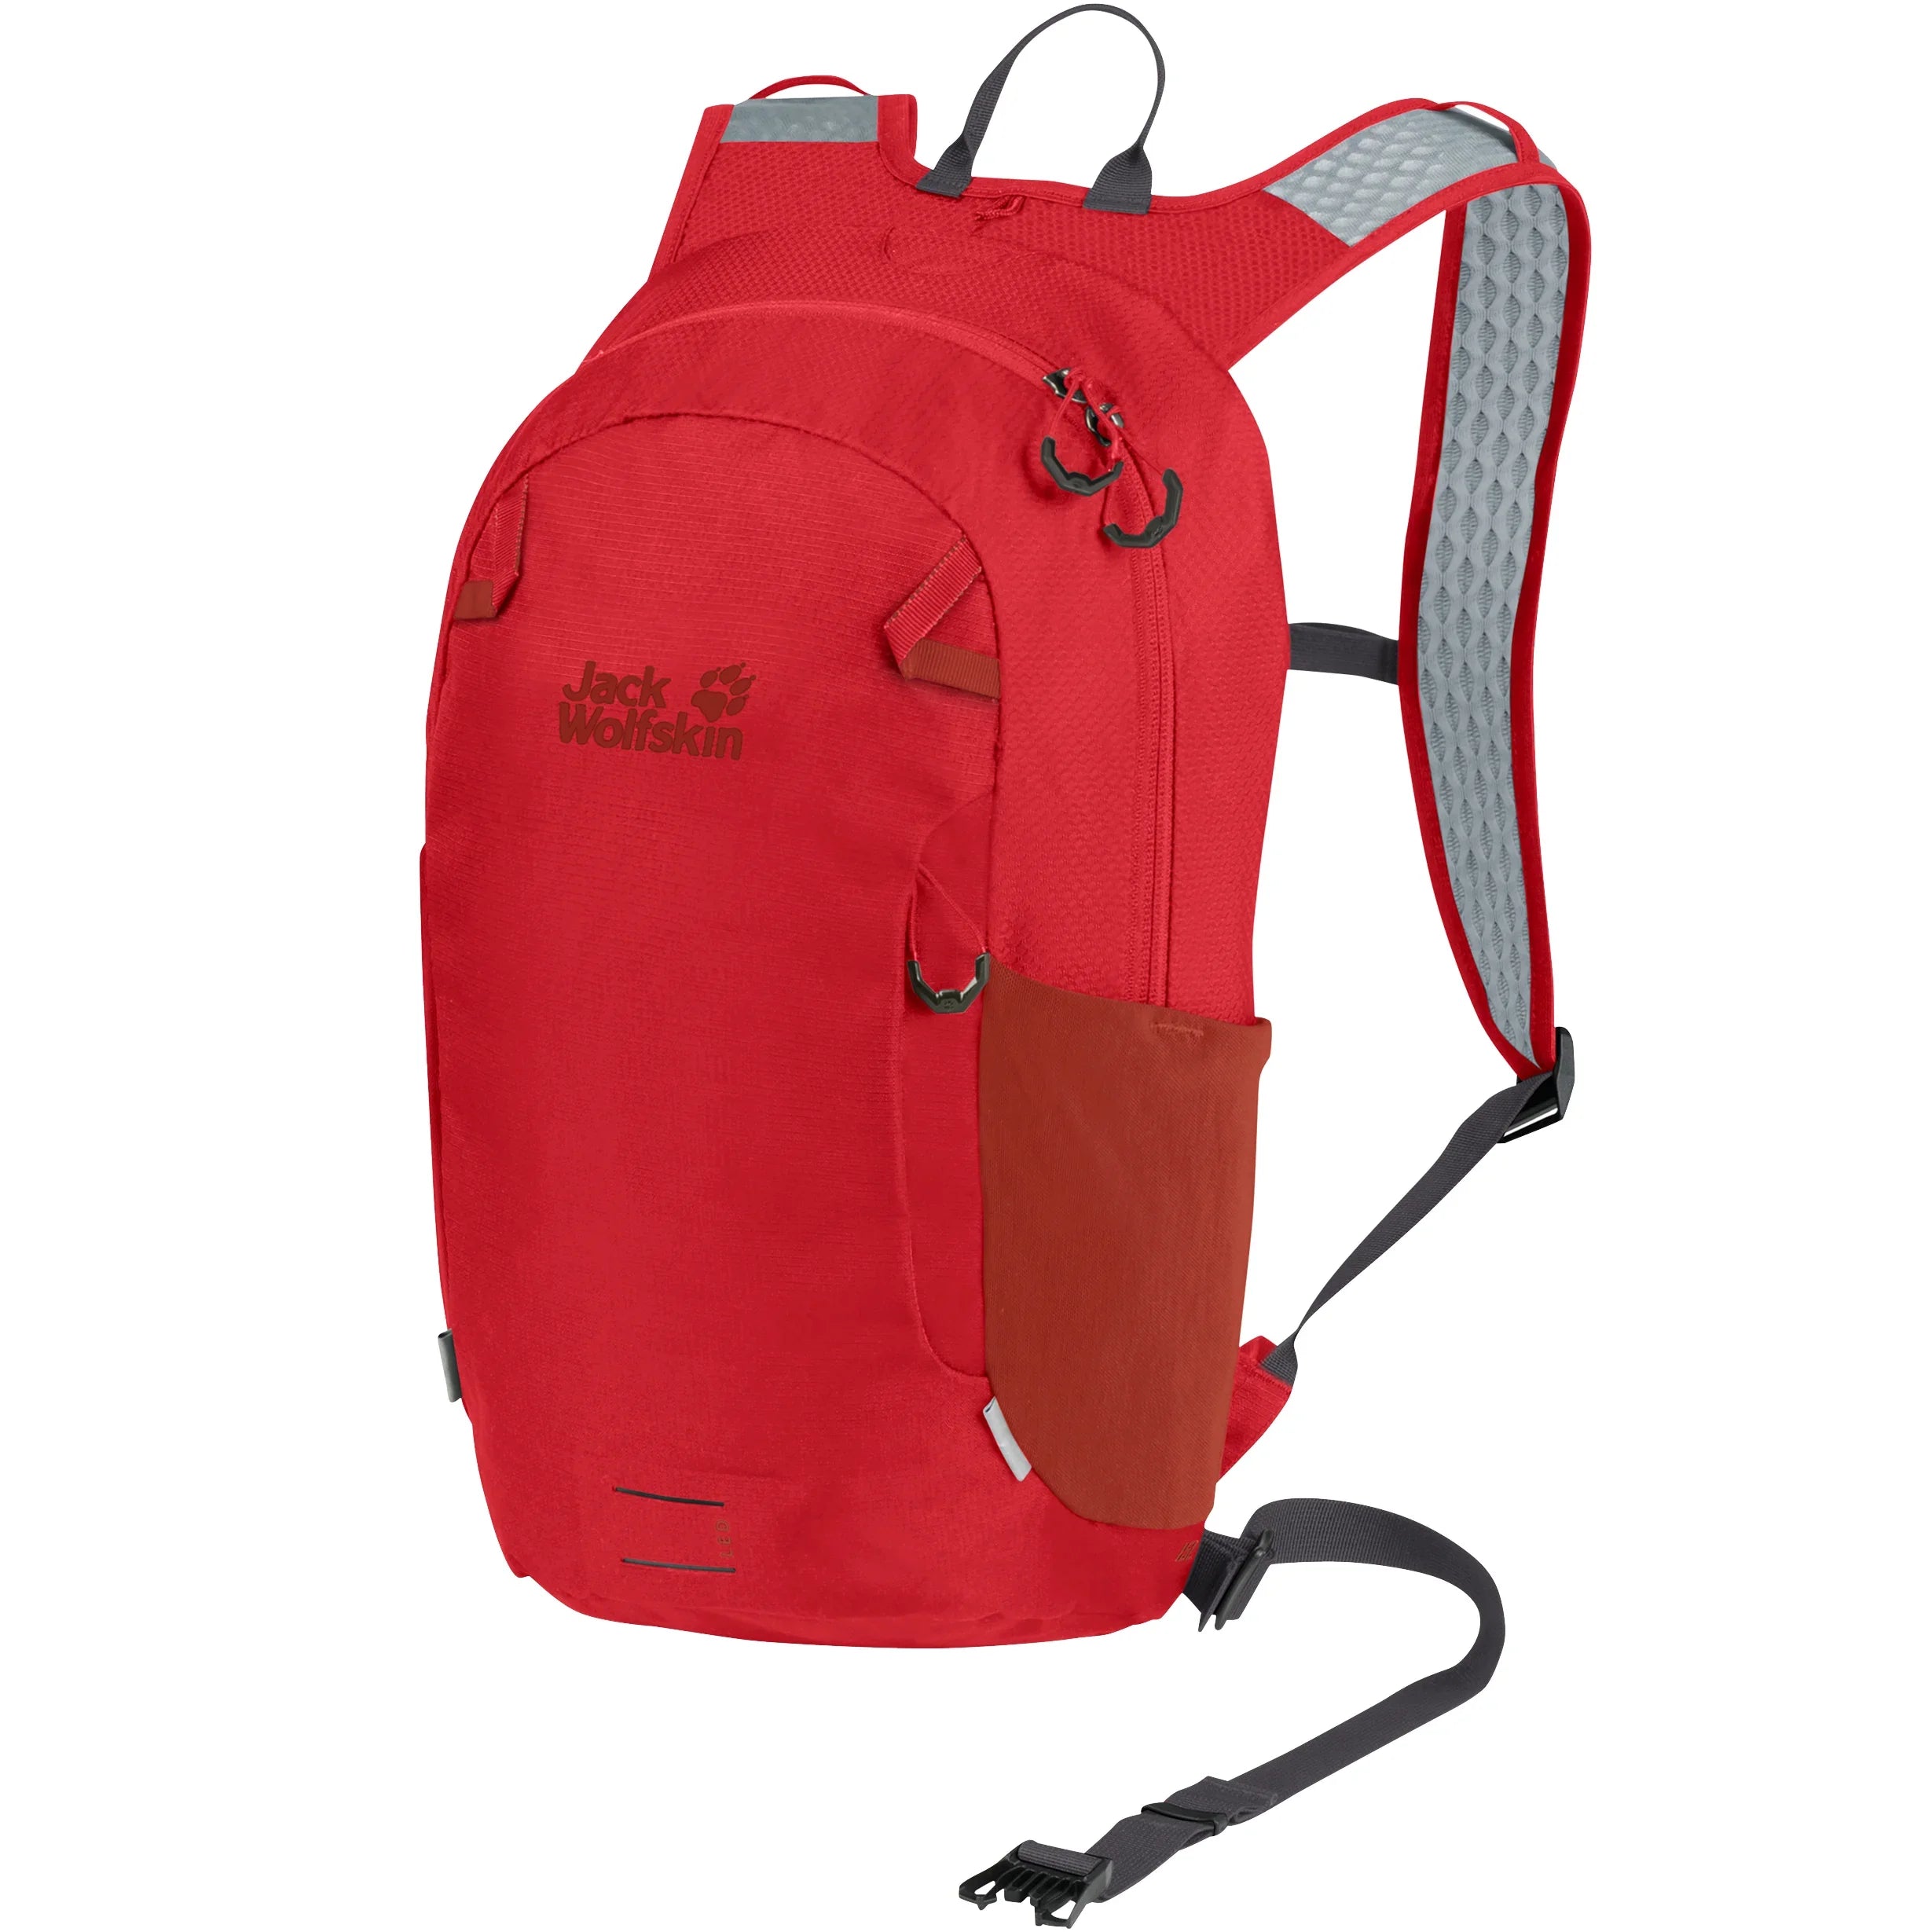 Jack Wolfskin Daypacks & Bags Velo Jam 15 Rucksack 43 cm - Adrenaline Red